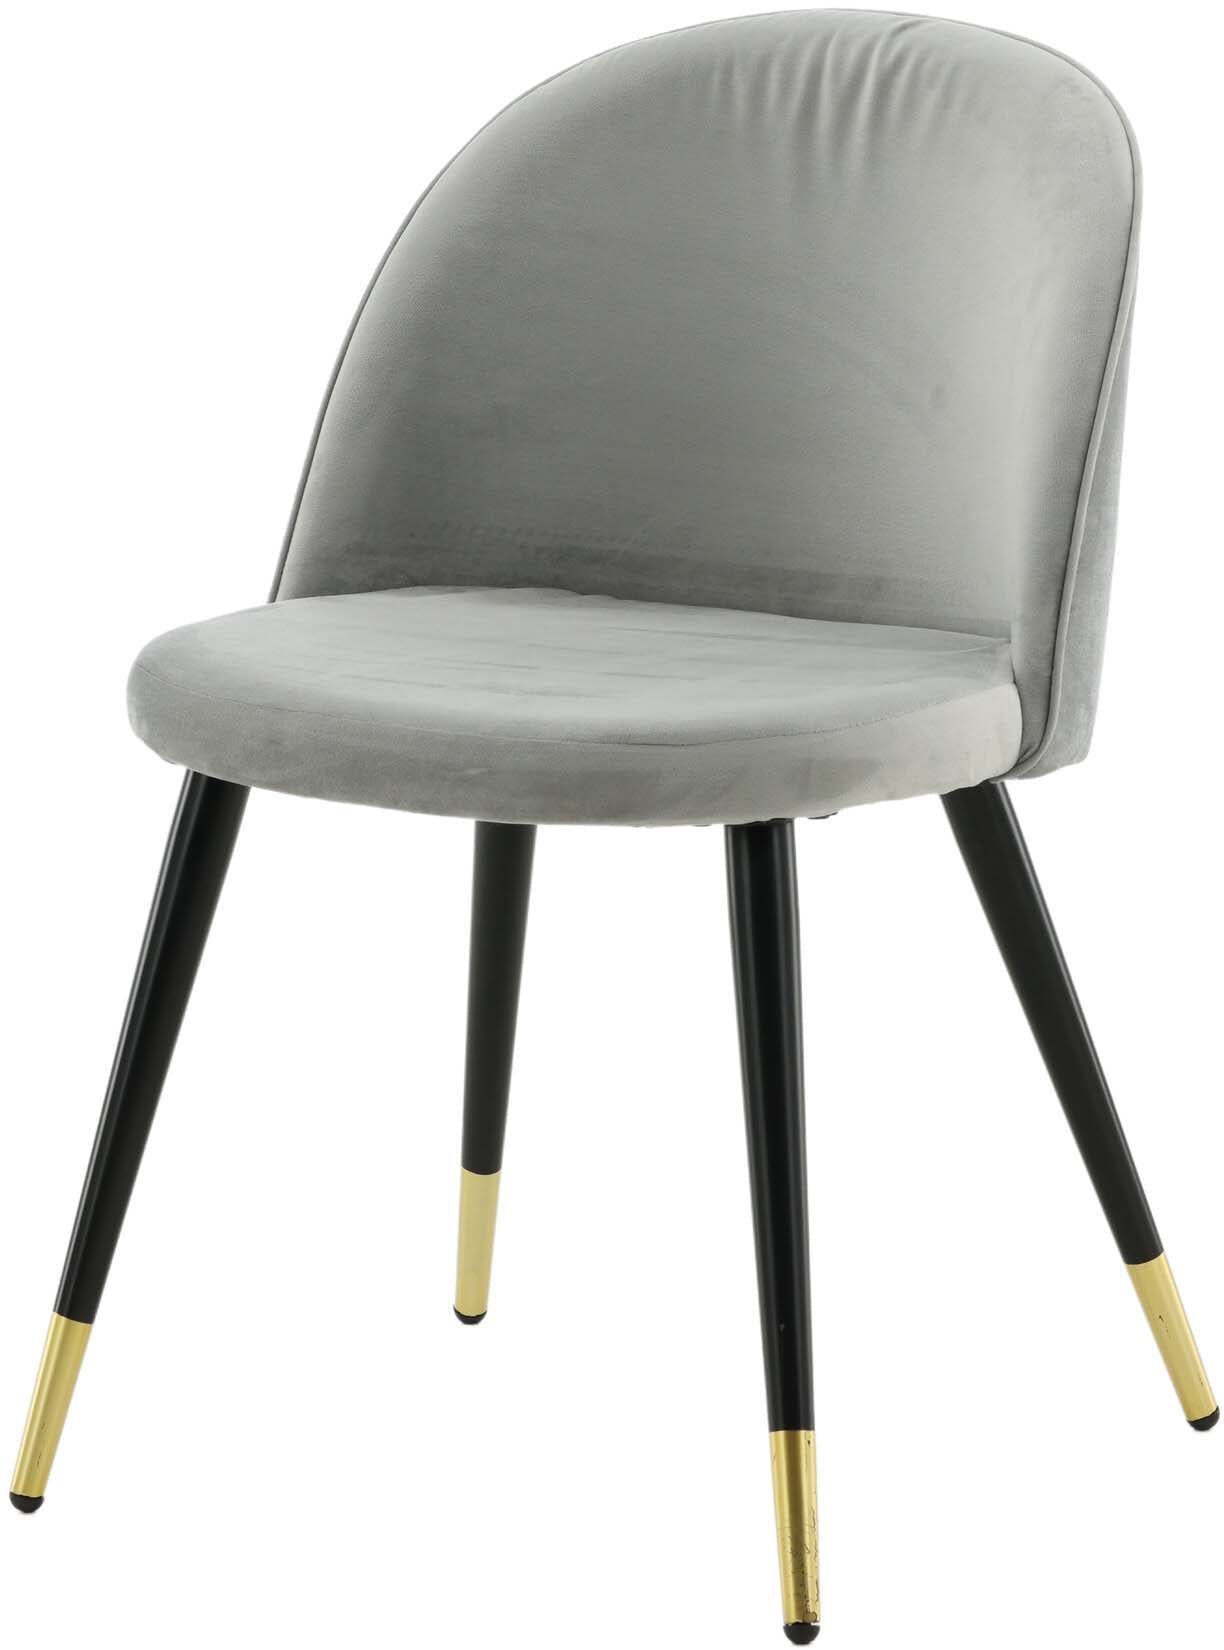 Velvet Matstol Stuhl in Grau / Schwarz / Gold präsentiert im Onlineshop von KAQTU Design AG. Schalenstuhl ist von Venture Home